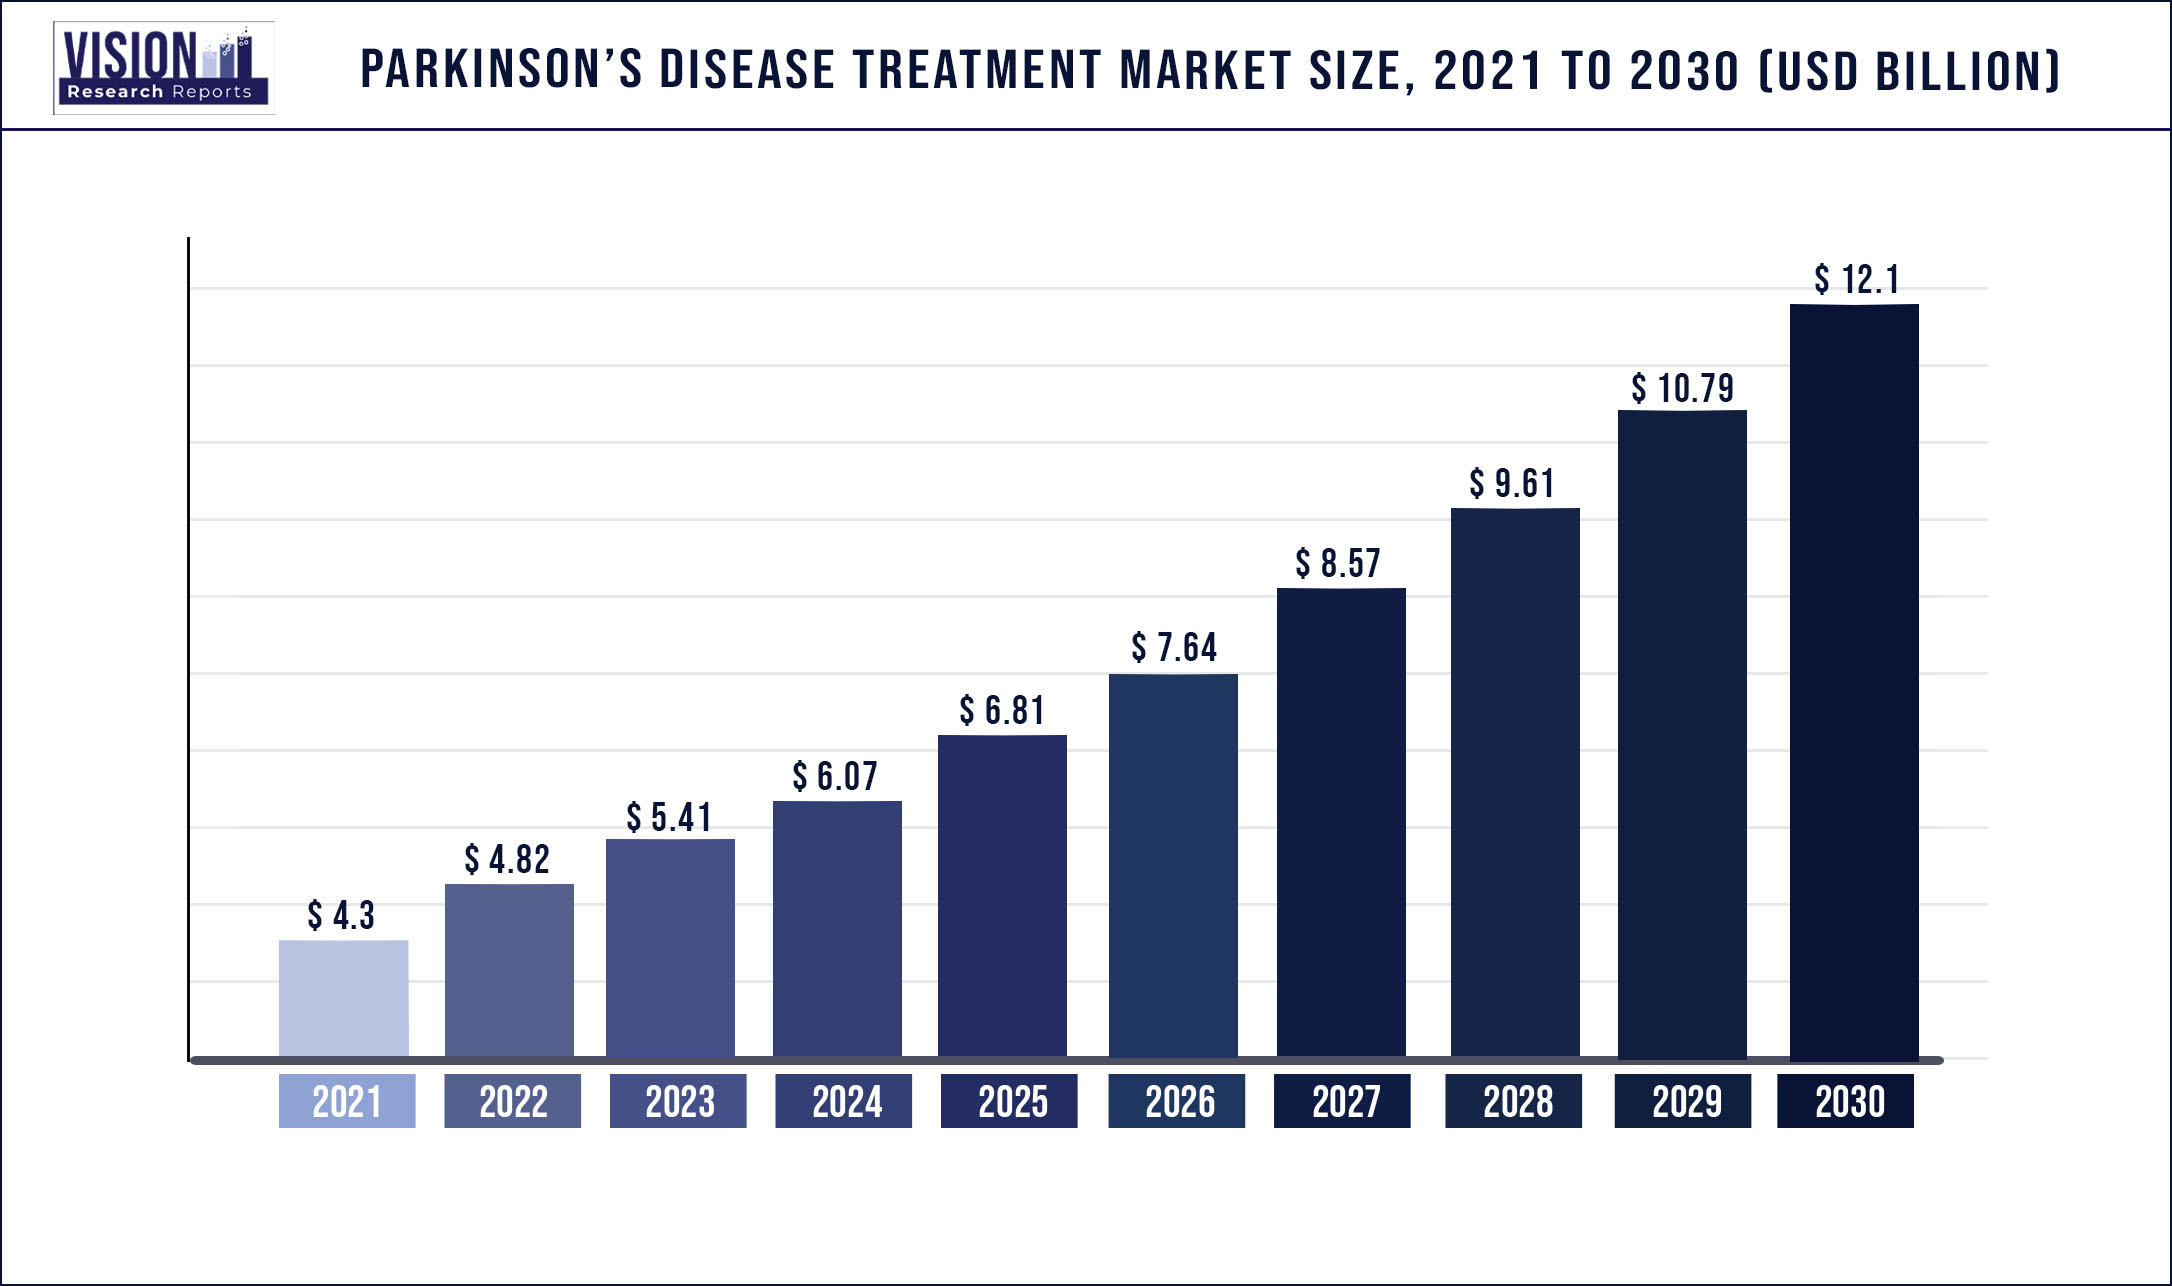 Parkinson’s Disease Treatment Market Size 2021 to 2030